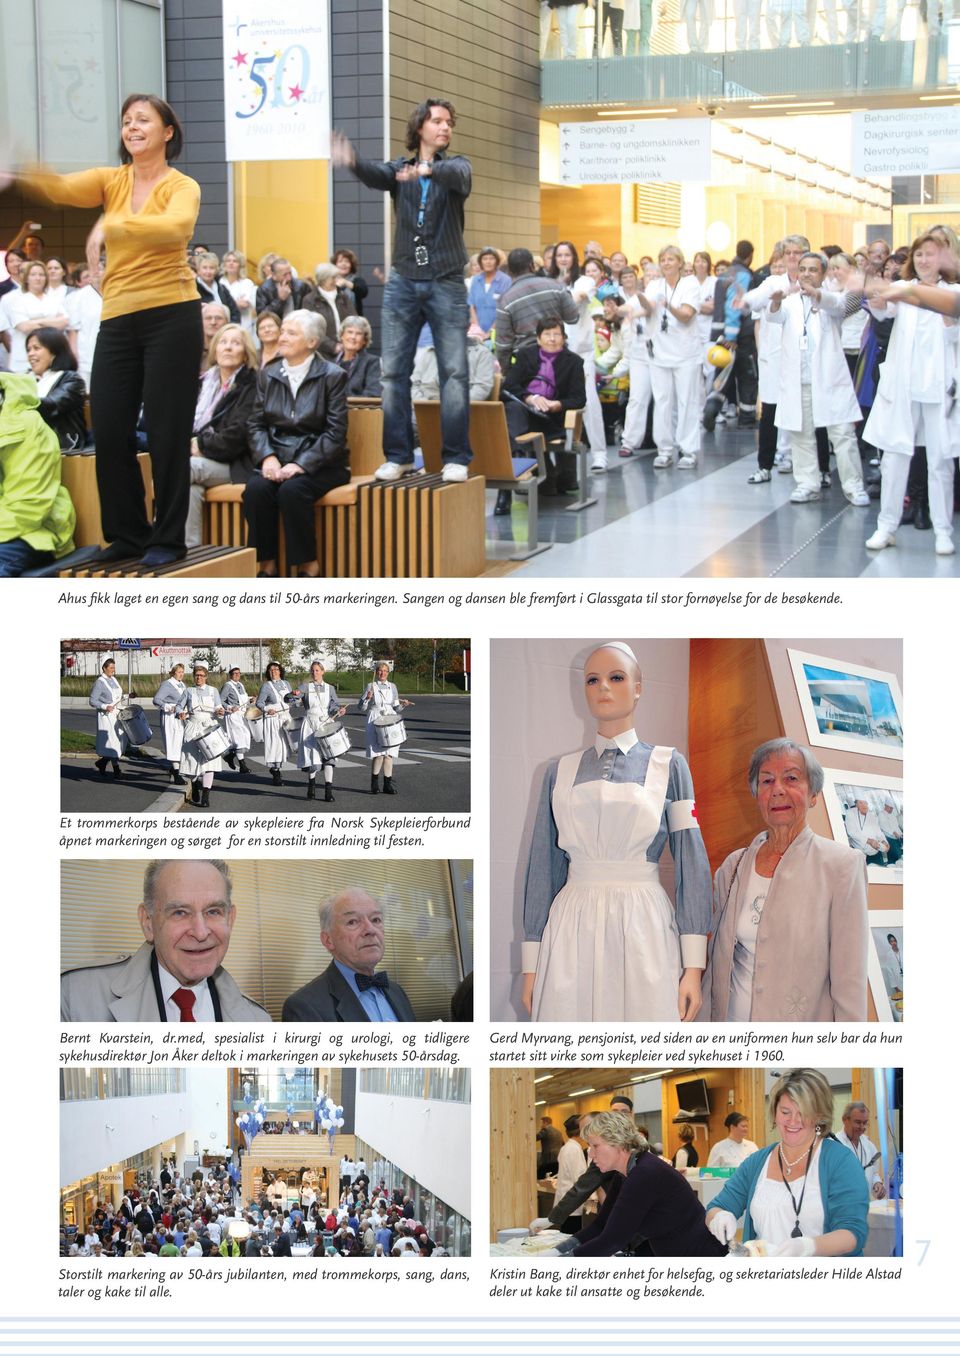 med, spesialist i kirurgi og urologi, og tidligere sykehusdirektør Jon Åker deltok i markeringen av sykehusets 50-årsdag.